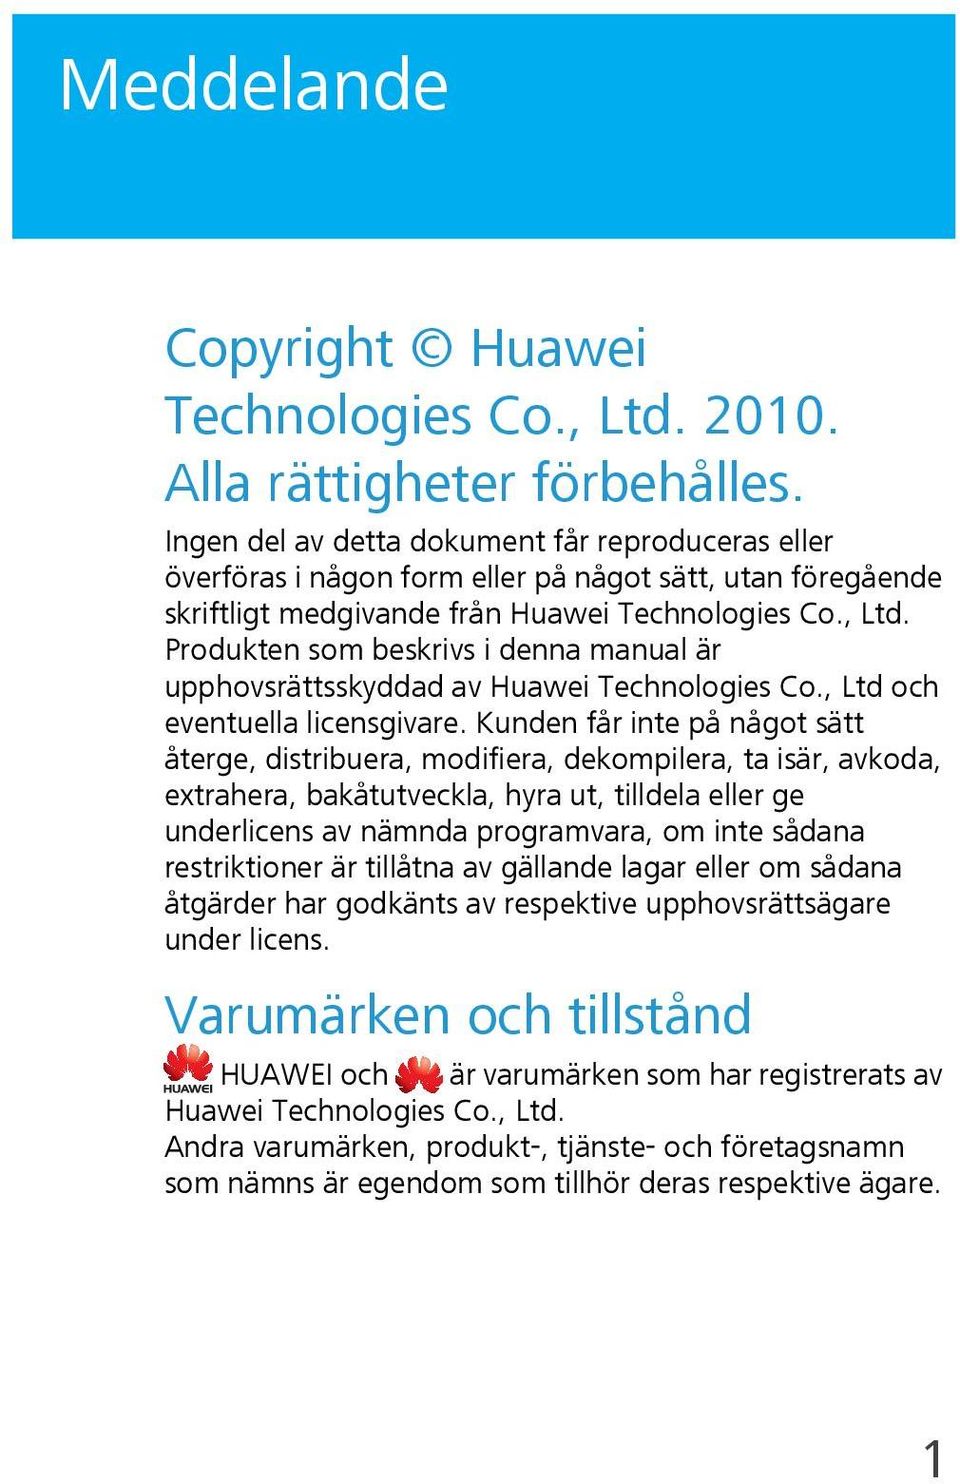 Produkten som beskrivs i denna manual är upphovsrättsskyddad av Huawei Technologies Co., Ltd och eventuella licensgivare.